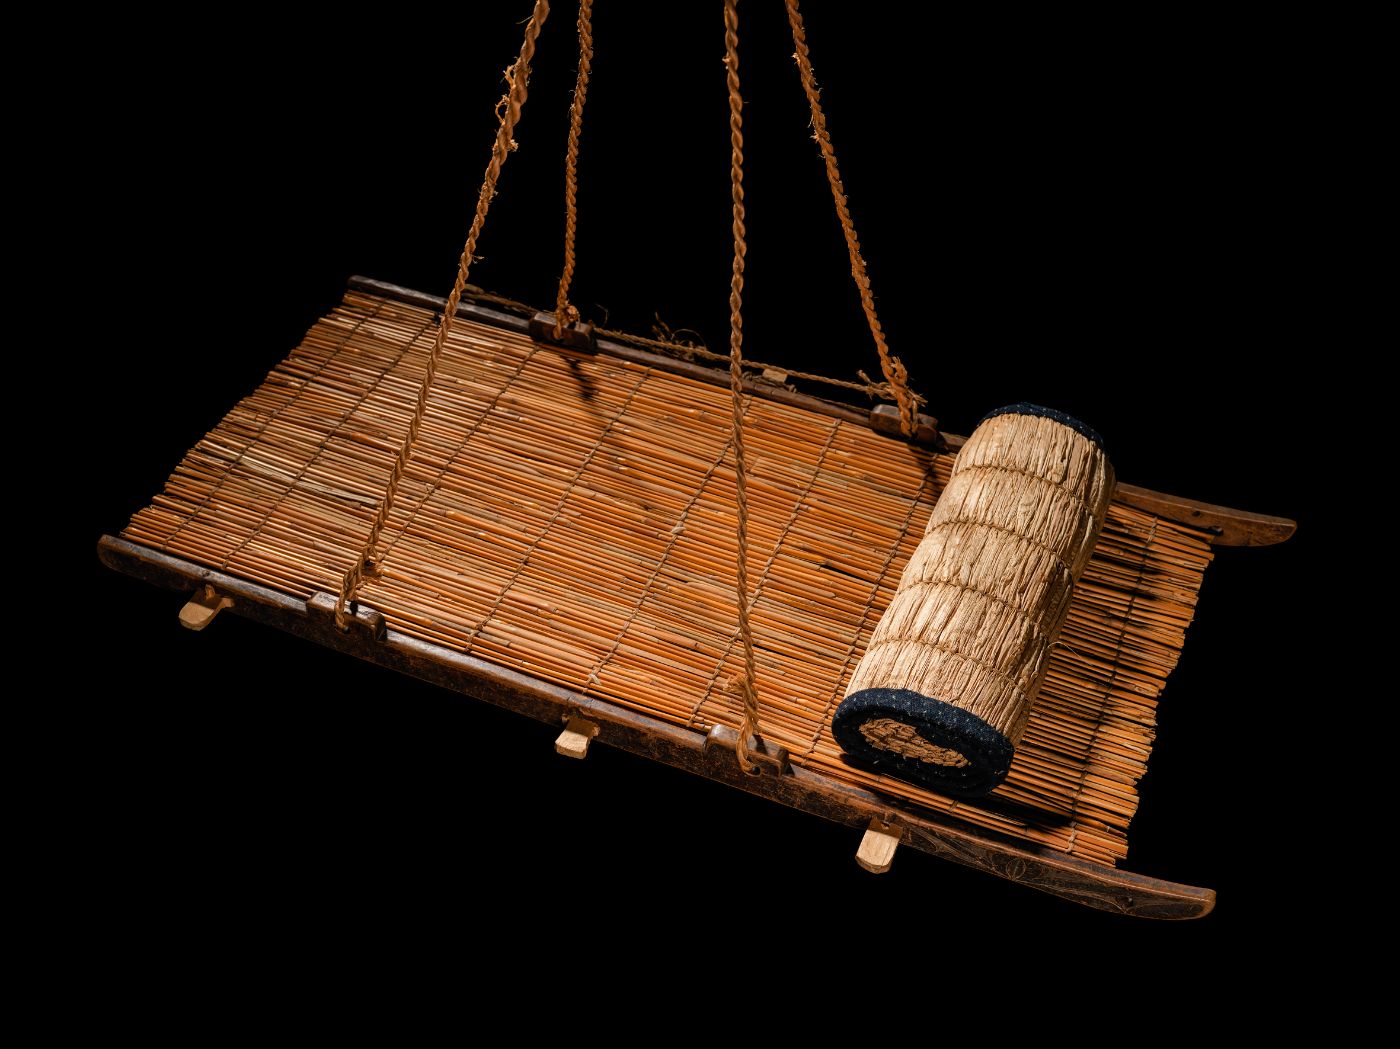 Bambus und Holz wurden zu einer Art Brett zusammengefügt, das an vier Seilen hängt; darauf ist eine Matte zusammengerollt.